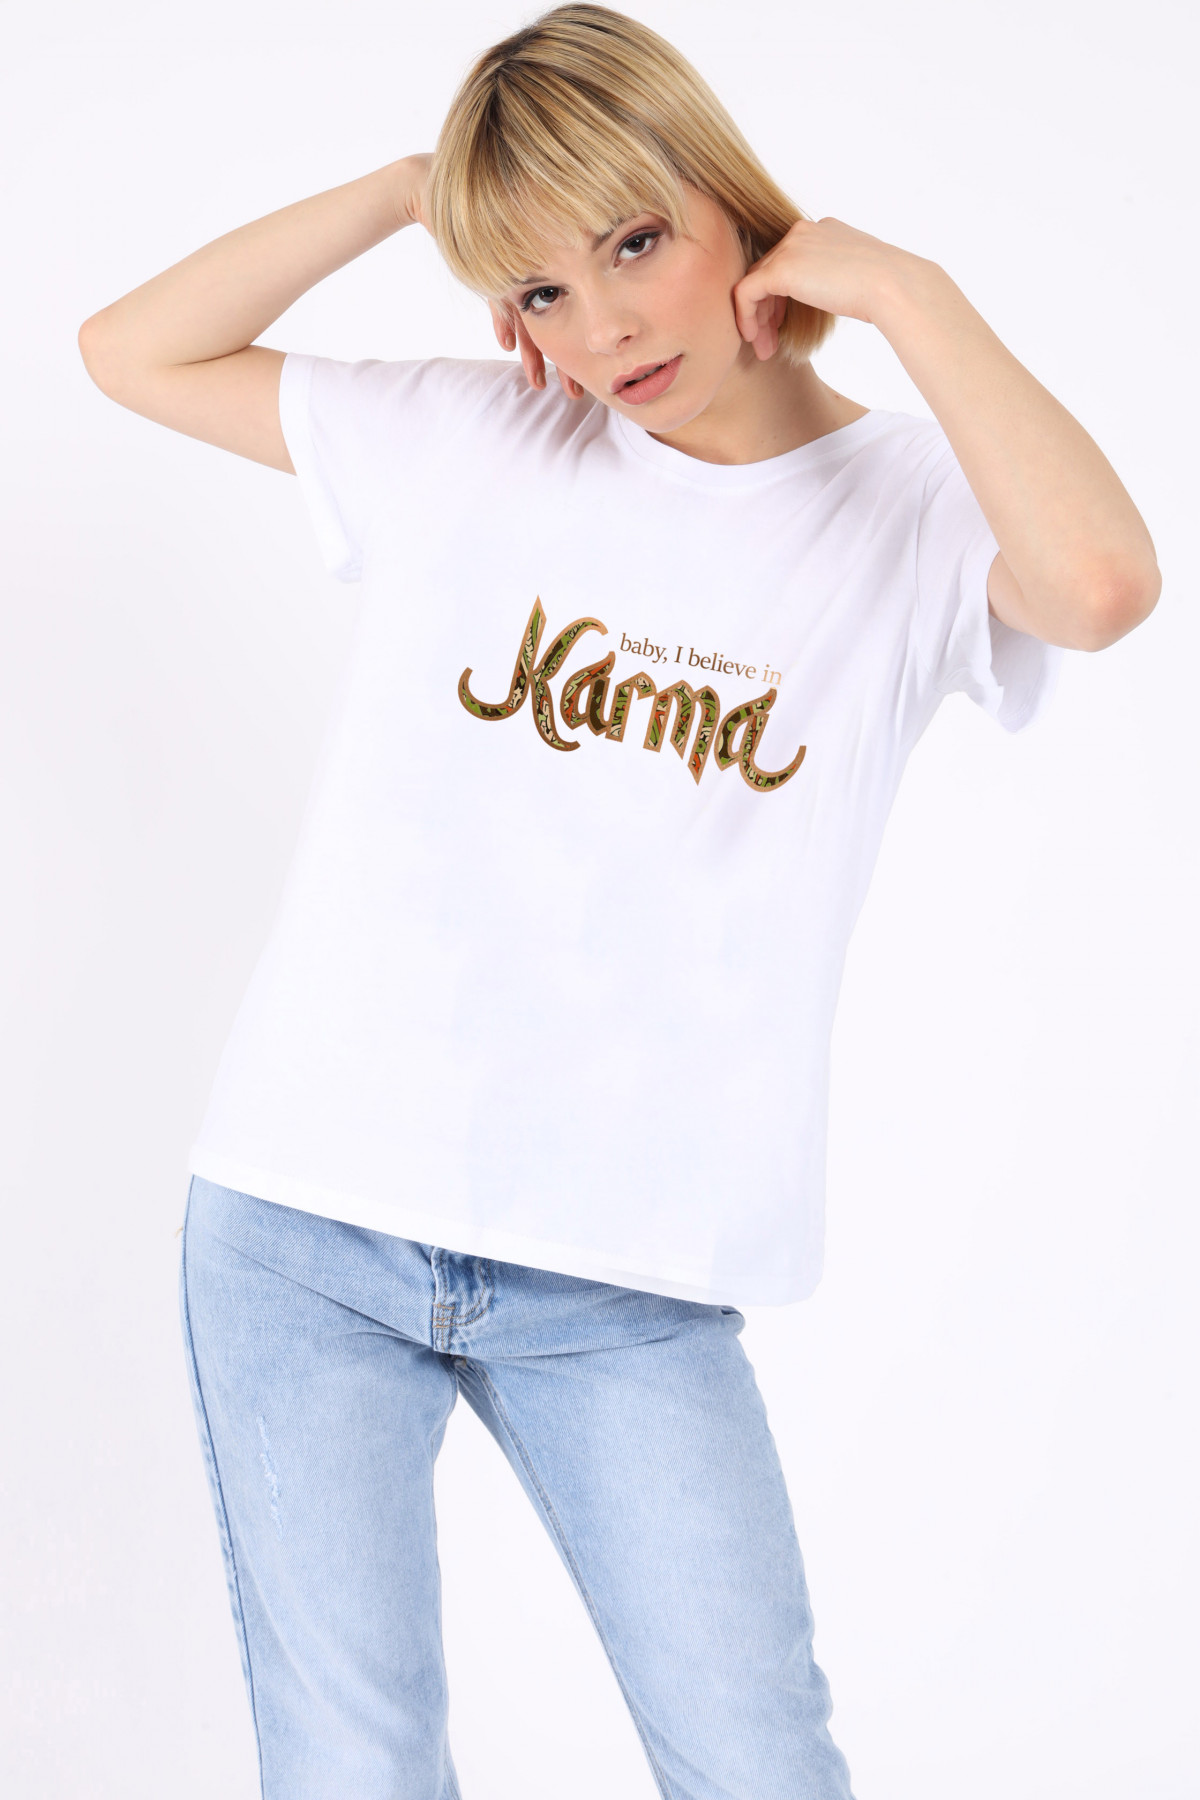 Karma T-Shirt